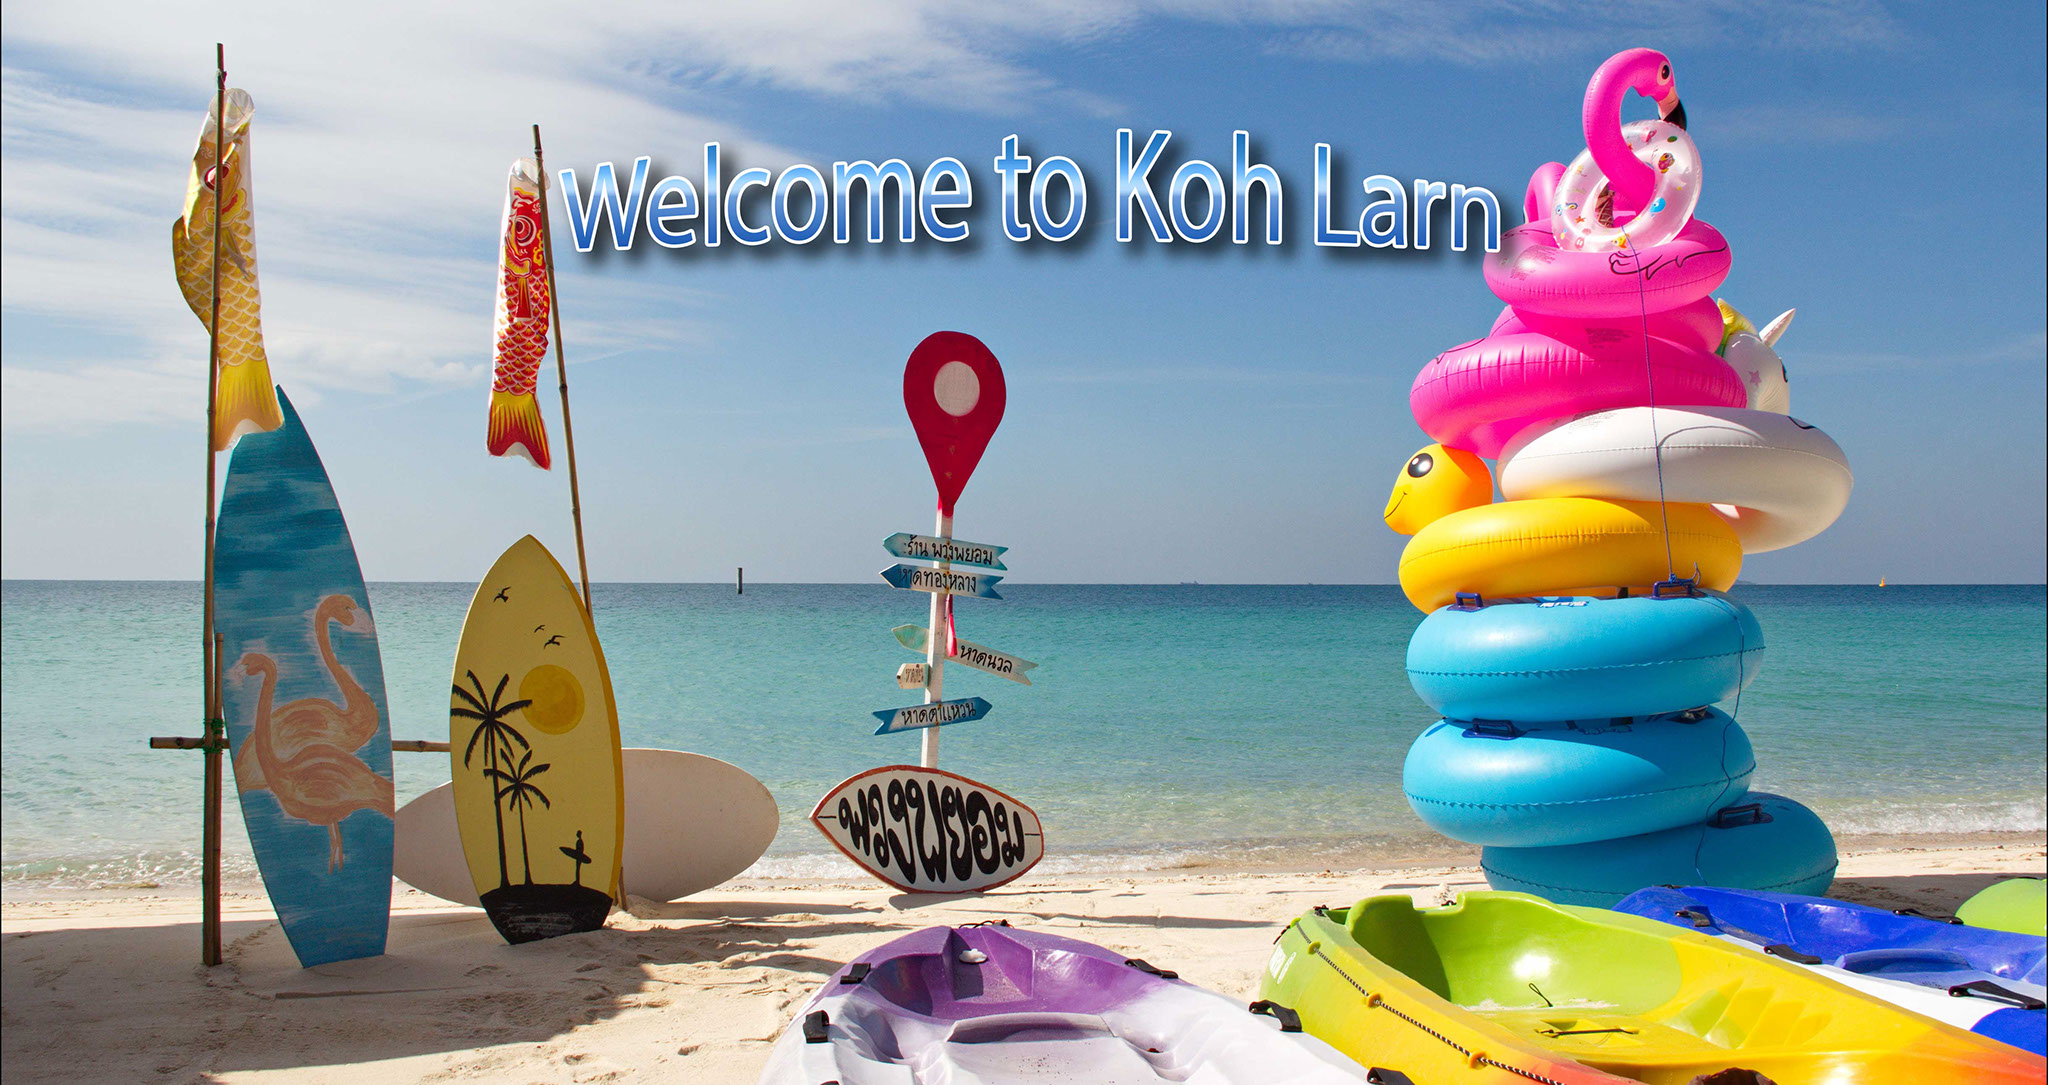 Tour đảo Kohlarn (Đảo San Hô) khởi hành từ Pattaya với Đi bộ dưới biển, Dù lượn, Thuyền chuối, Lặn biển, Motor nước, Ăn trưa hải sản